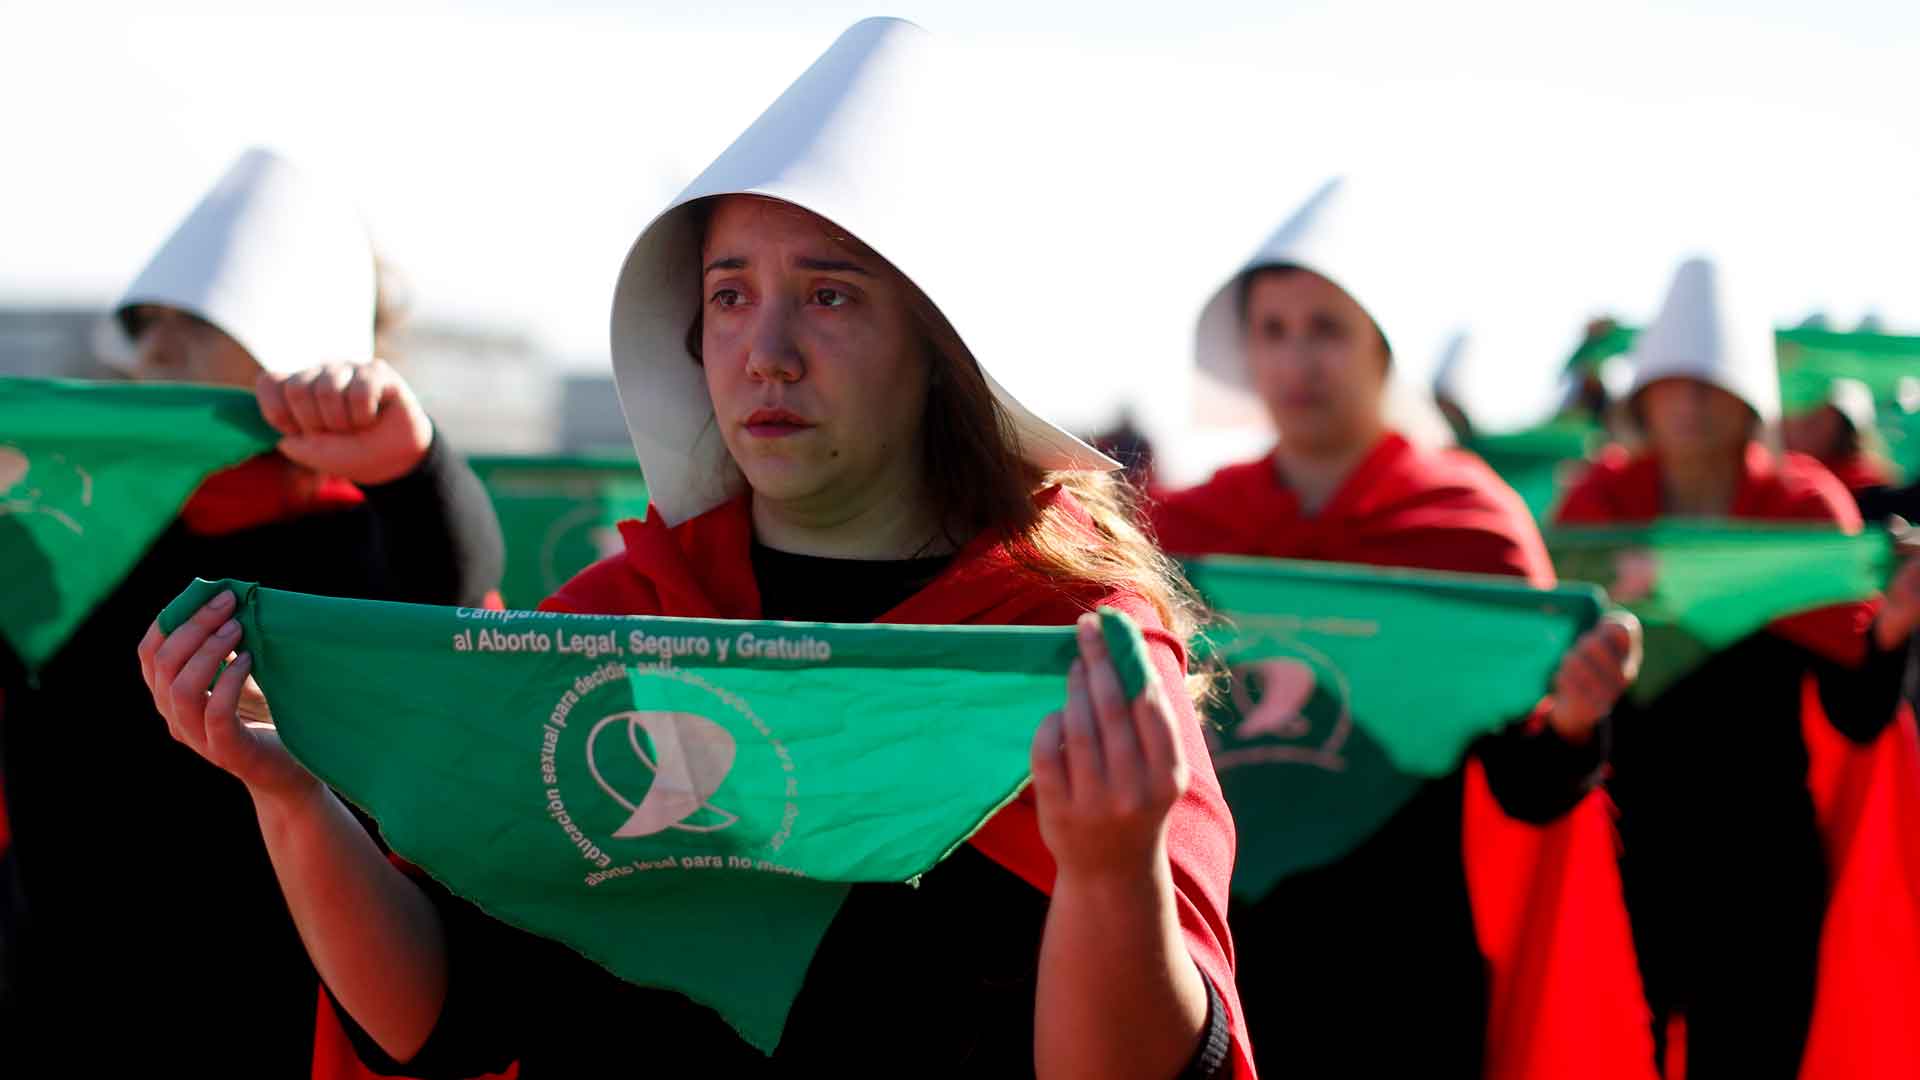 Los derechos de 345 millones de mujeres latinoamericanas pasaban por la legalización del aborto en Argentina